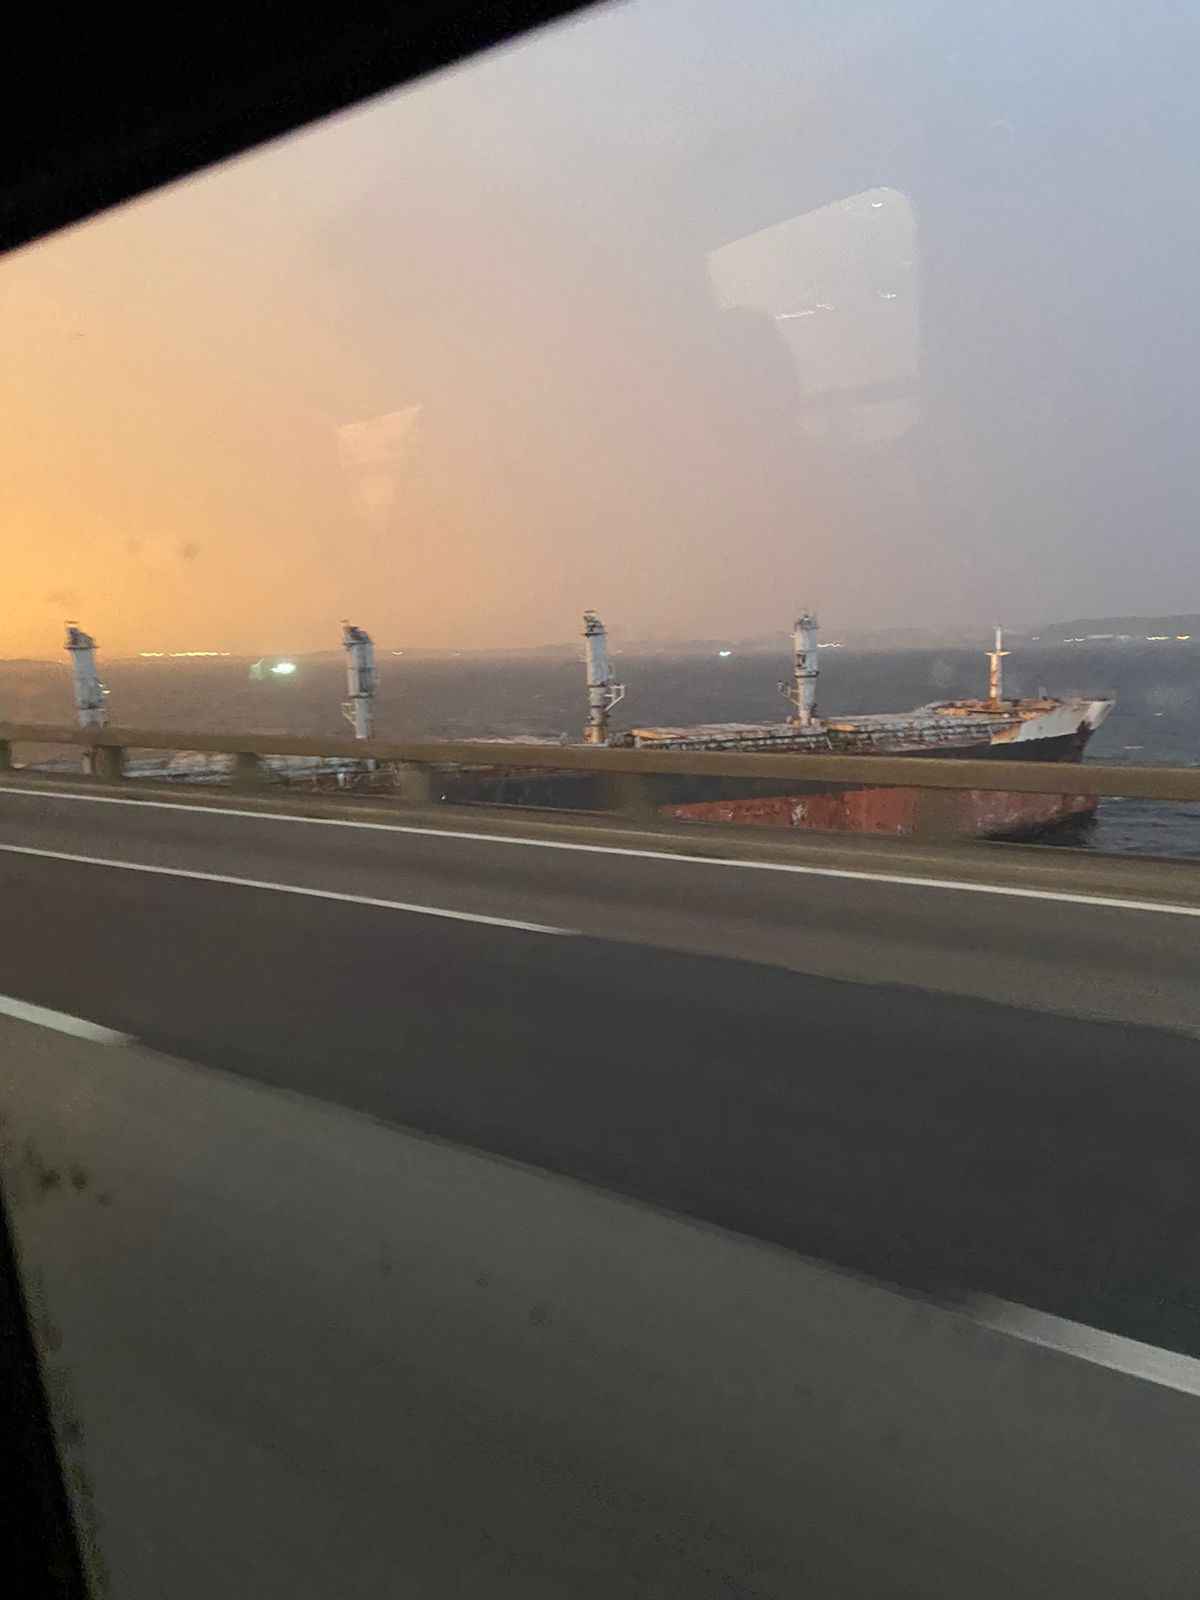 Ponte-Rio Niterói fica fechada em ambos os sentidos nesta segunda